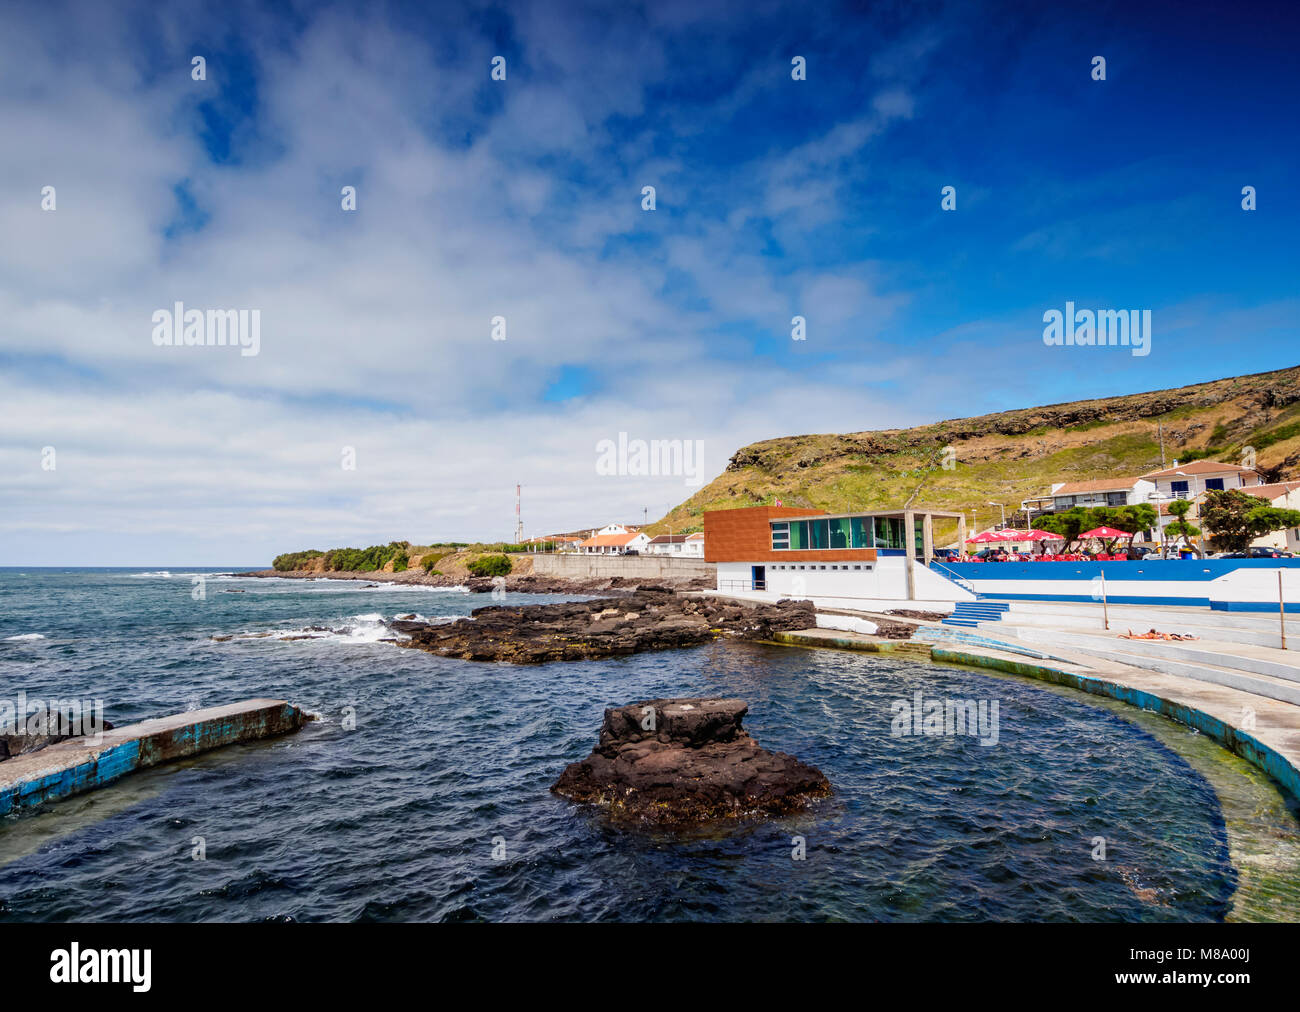 Anjos piscines, l'île de Santa Maria, Açores, Portugal Banque D'Images